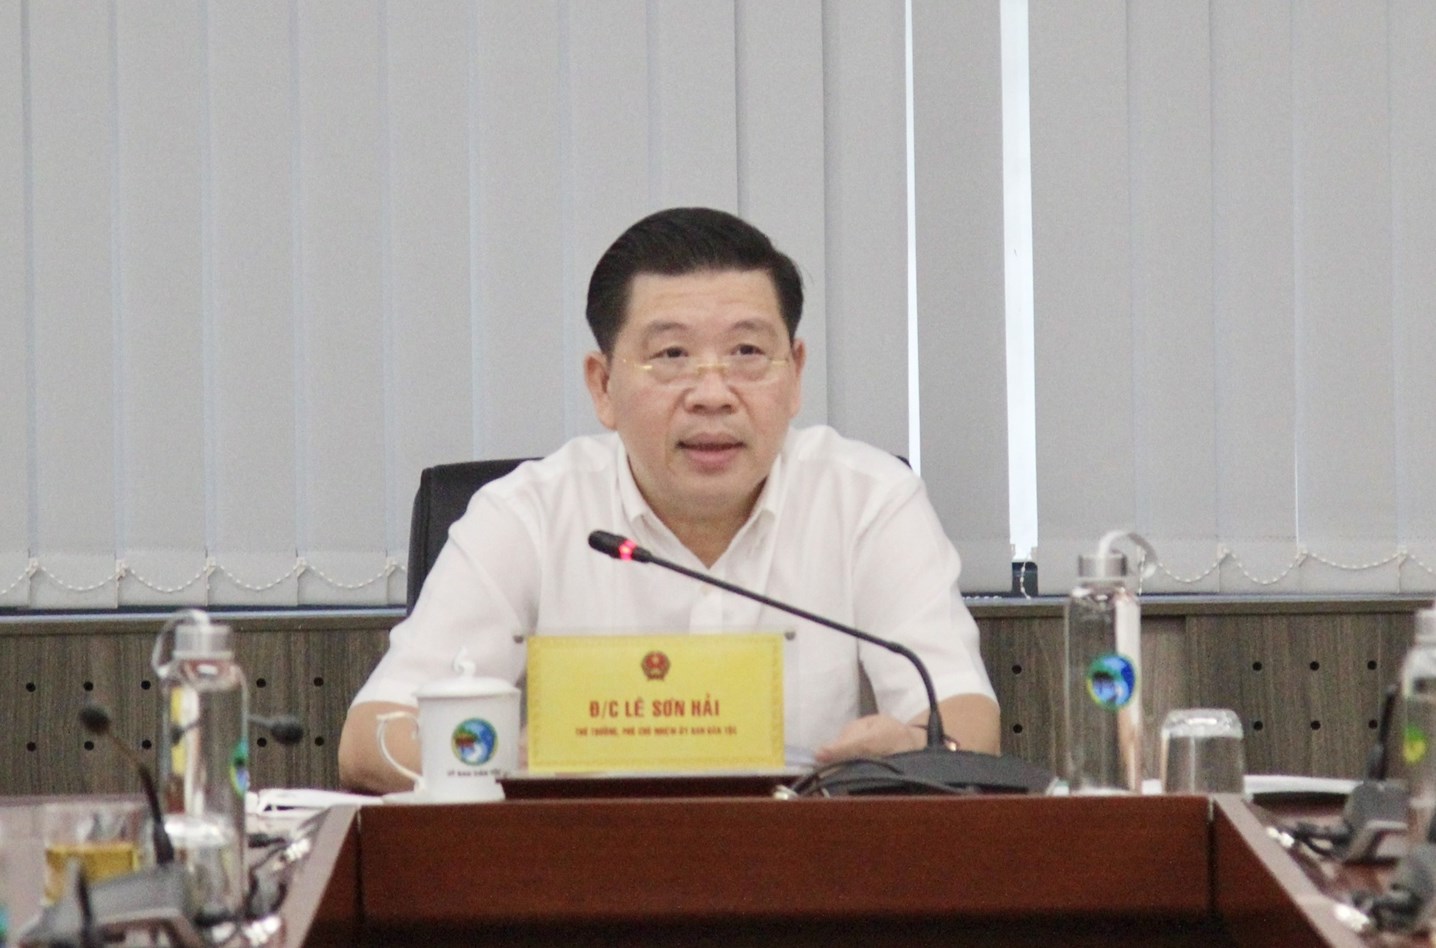 Thứ trưởng, Phó Chủ nhiệm UBDT Lê Sơn Hải chủ trì buổi họp